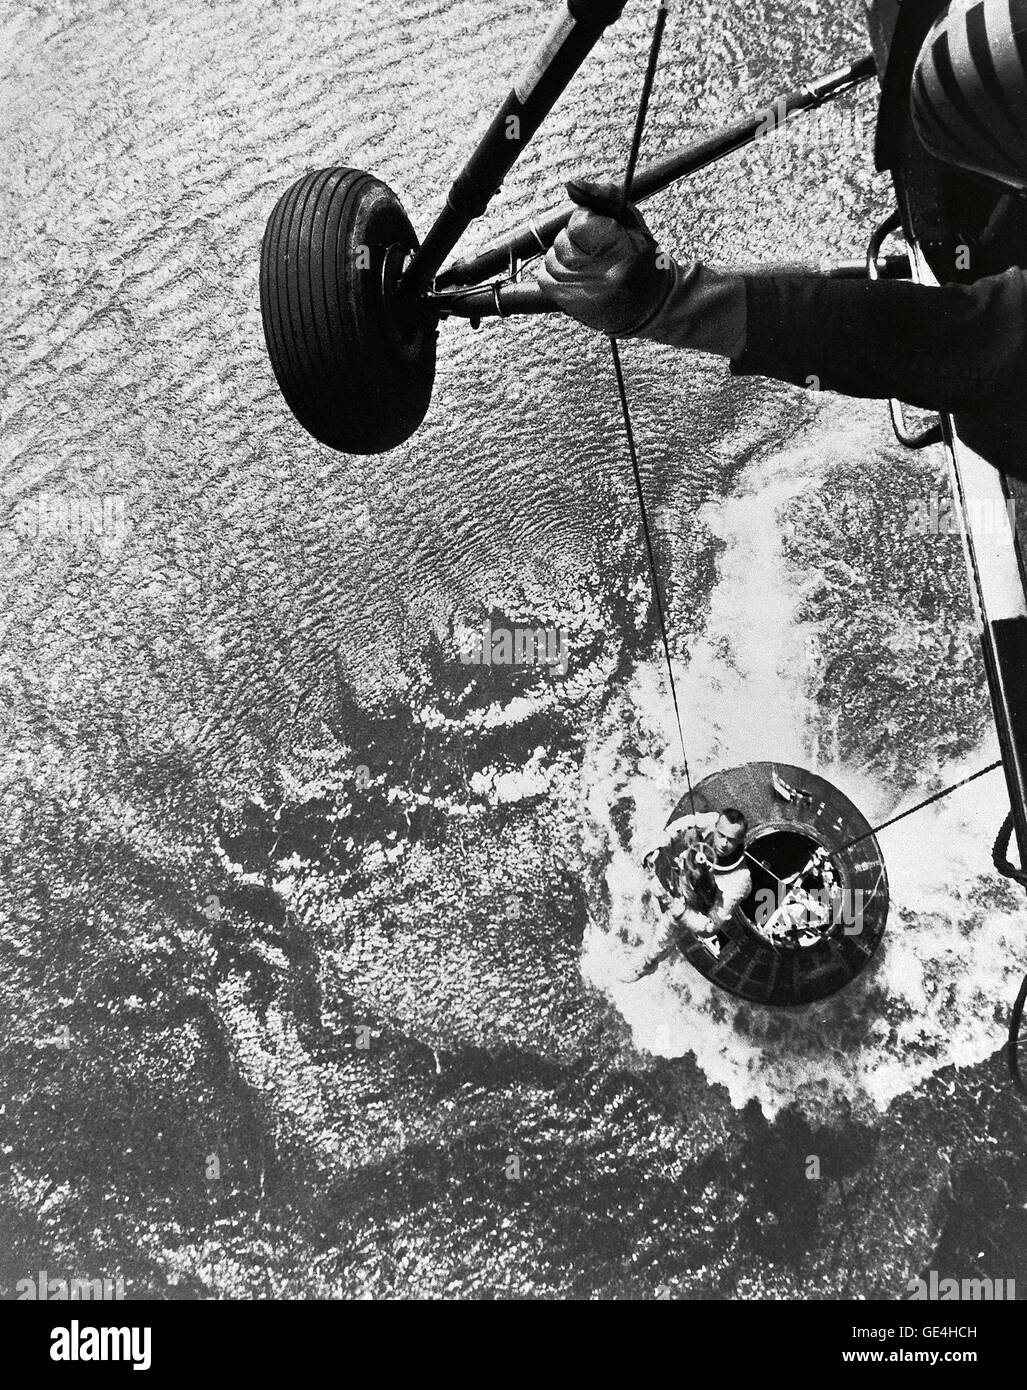 Ein US-Marine Hubschrauber-Recovery-Team hisst Astronaut Alan Shepard aus seinem Mercury-Raumschiff nach einem erfolgreichen Flug und Wasserung im Atlantik. Am 5. Mai 1961 wurde Alan B. Shepard Jr. der erste Amerikaner, der in den Weltraum zu fliegen. Seine Freiheit 7 Mercury-Kapsel flog eine suborbitalen Flugbahn 15 Minuten 22 Sekunden. Sein Raumschiff landete in den Atlantischen Ozean, wo er und seine Kapsel wurden mit dem Hubschrauber geborgen und transportiert, auf dem wartet auf Flugzeugträger USS Lake Champlain.  Bild #: S61-02723 Stockfoto